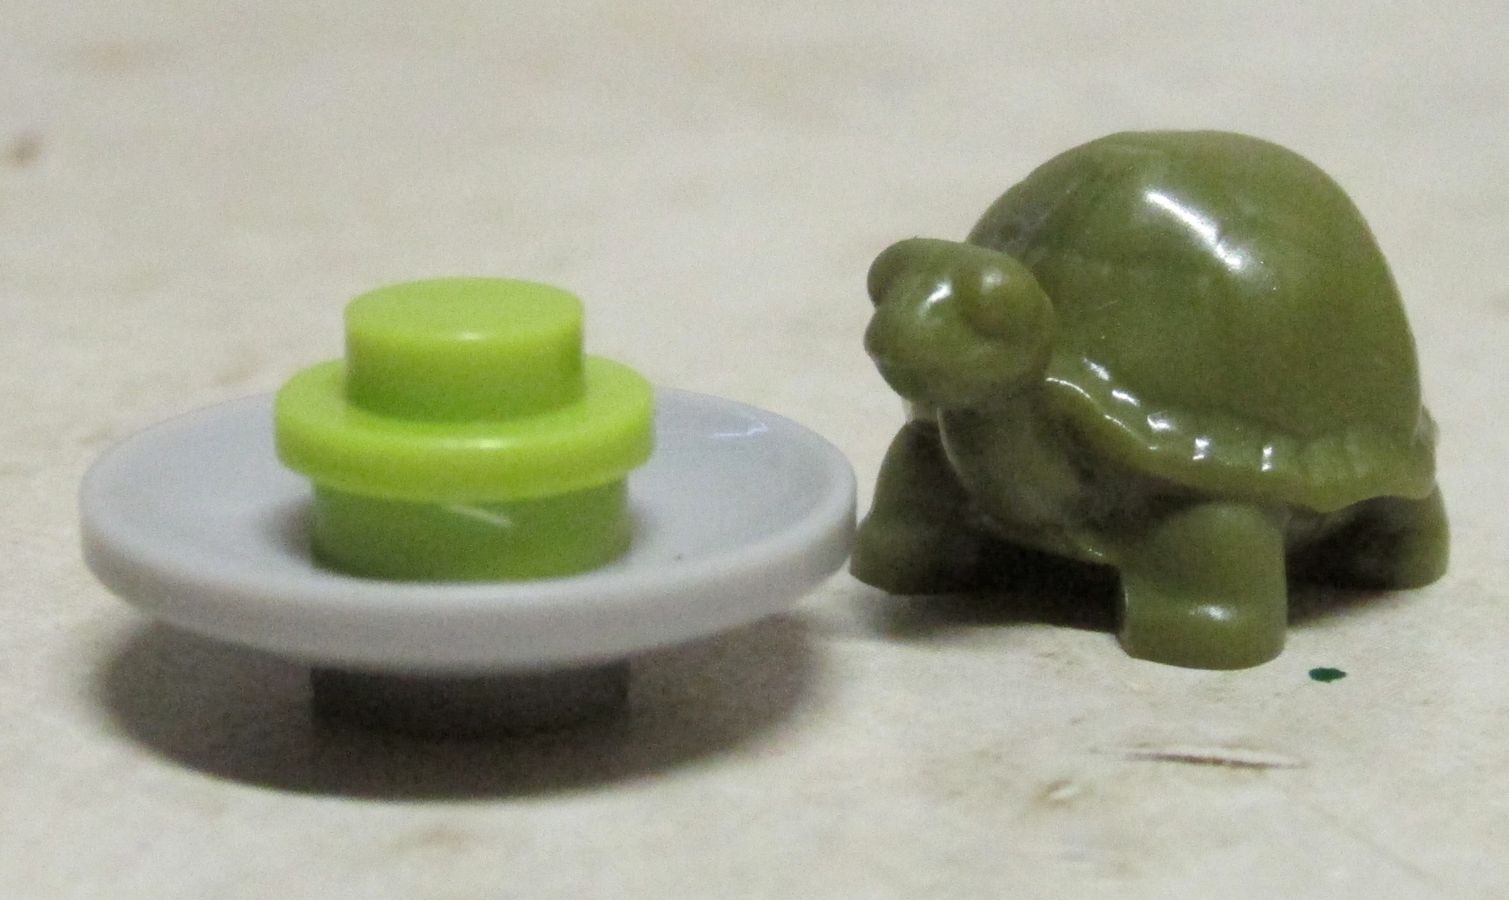 Raph's pet turtle